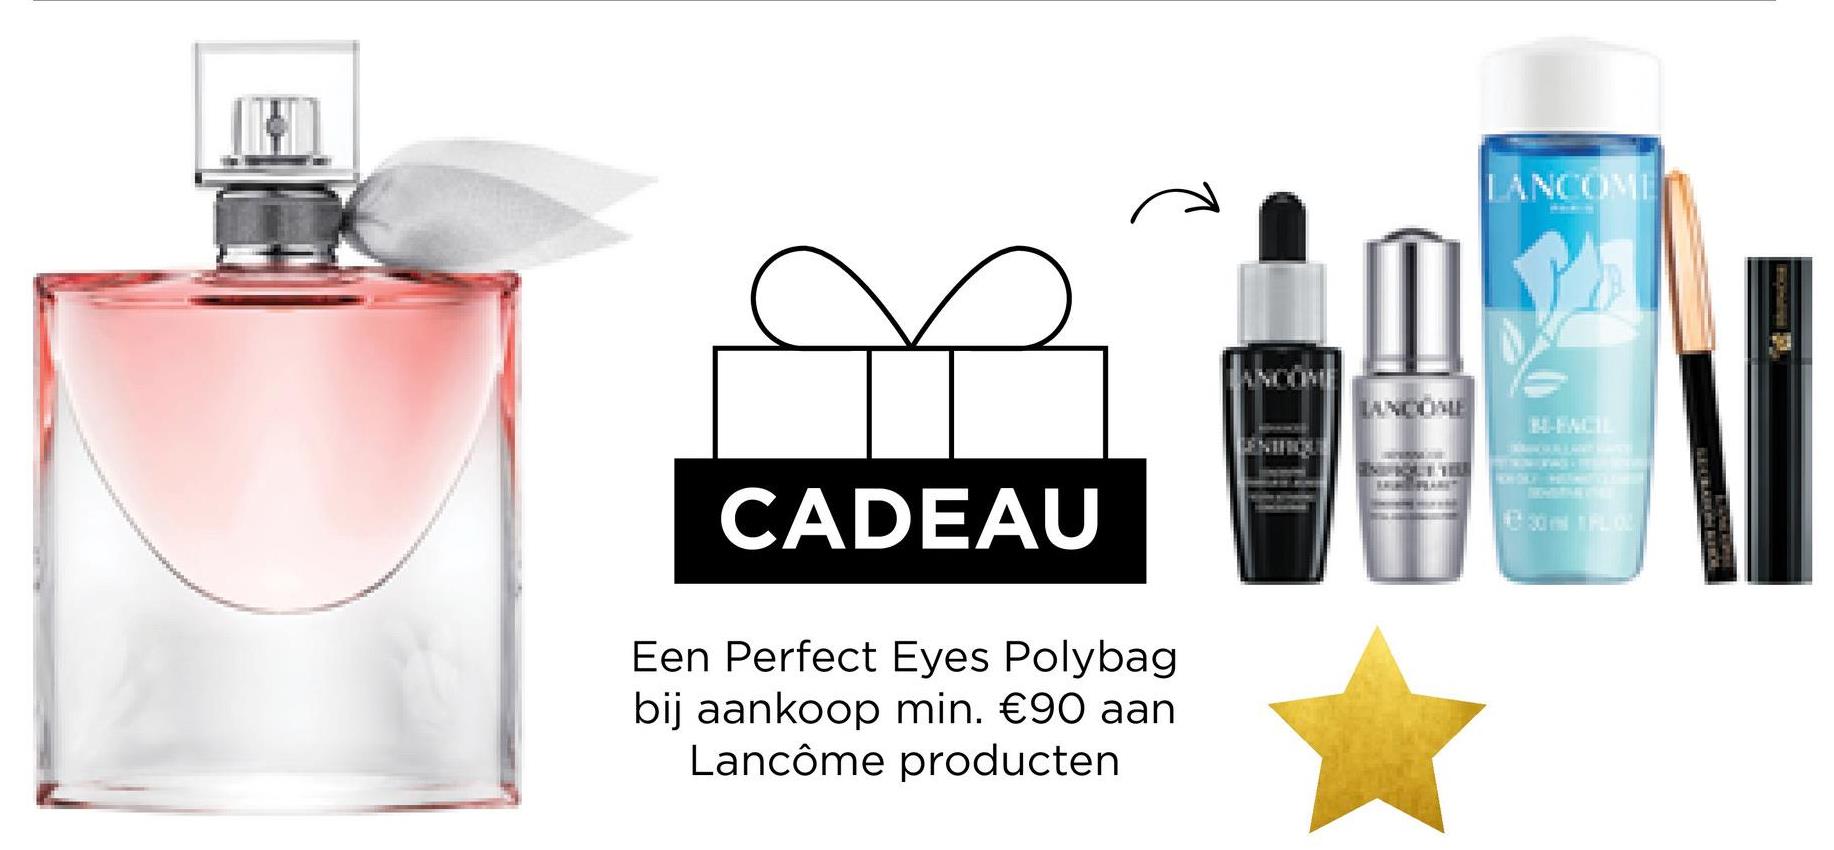 CADEAU
Een Perfect Eyes Polybag
bij aankoop min. €90 aan
Lancôme producten
ng
LANCOME